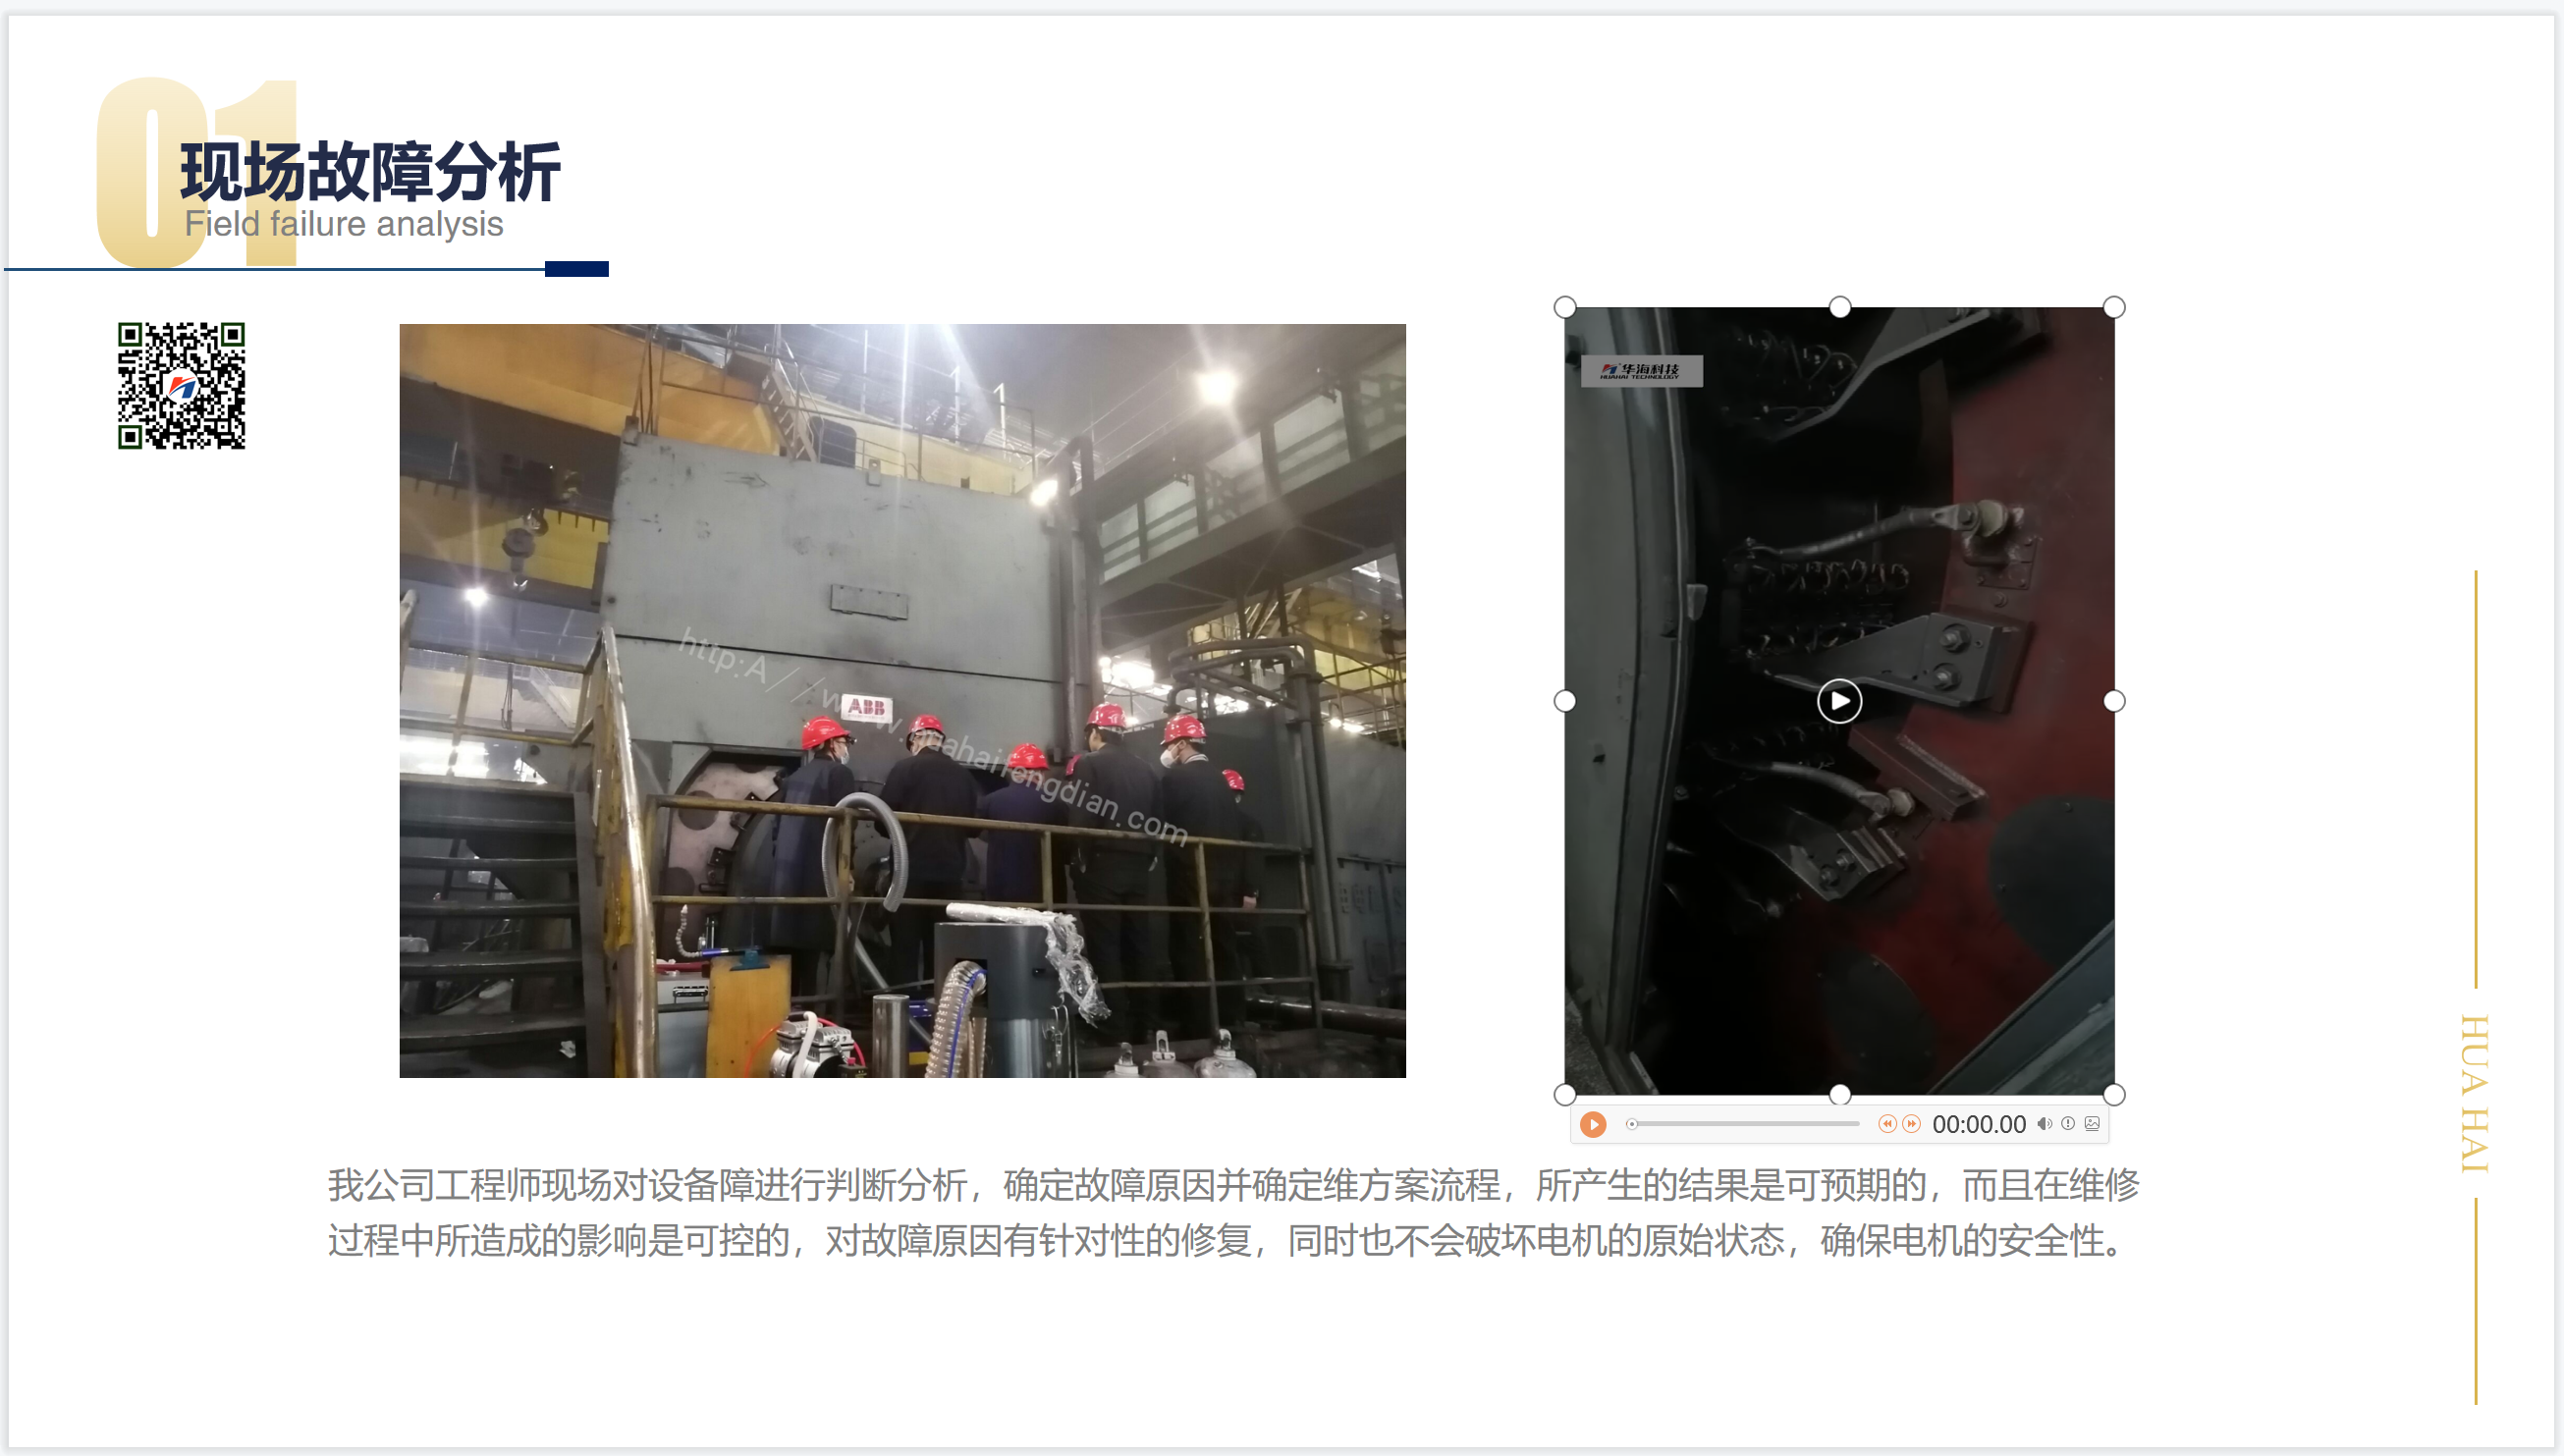 天津鋼管公司進口ABB電機換向器現場檢修